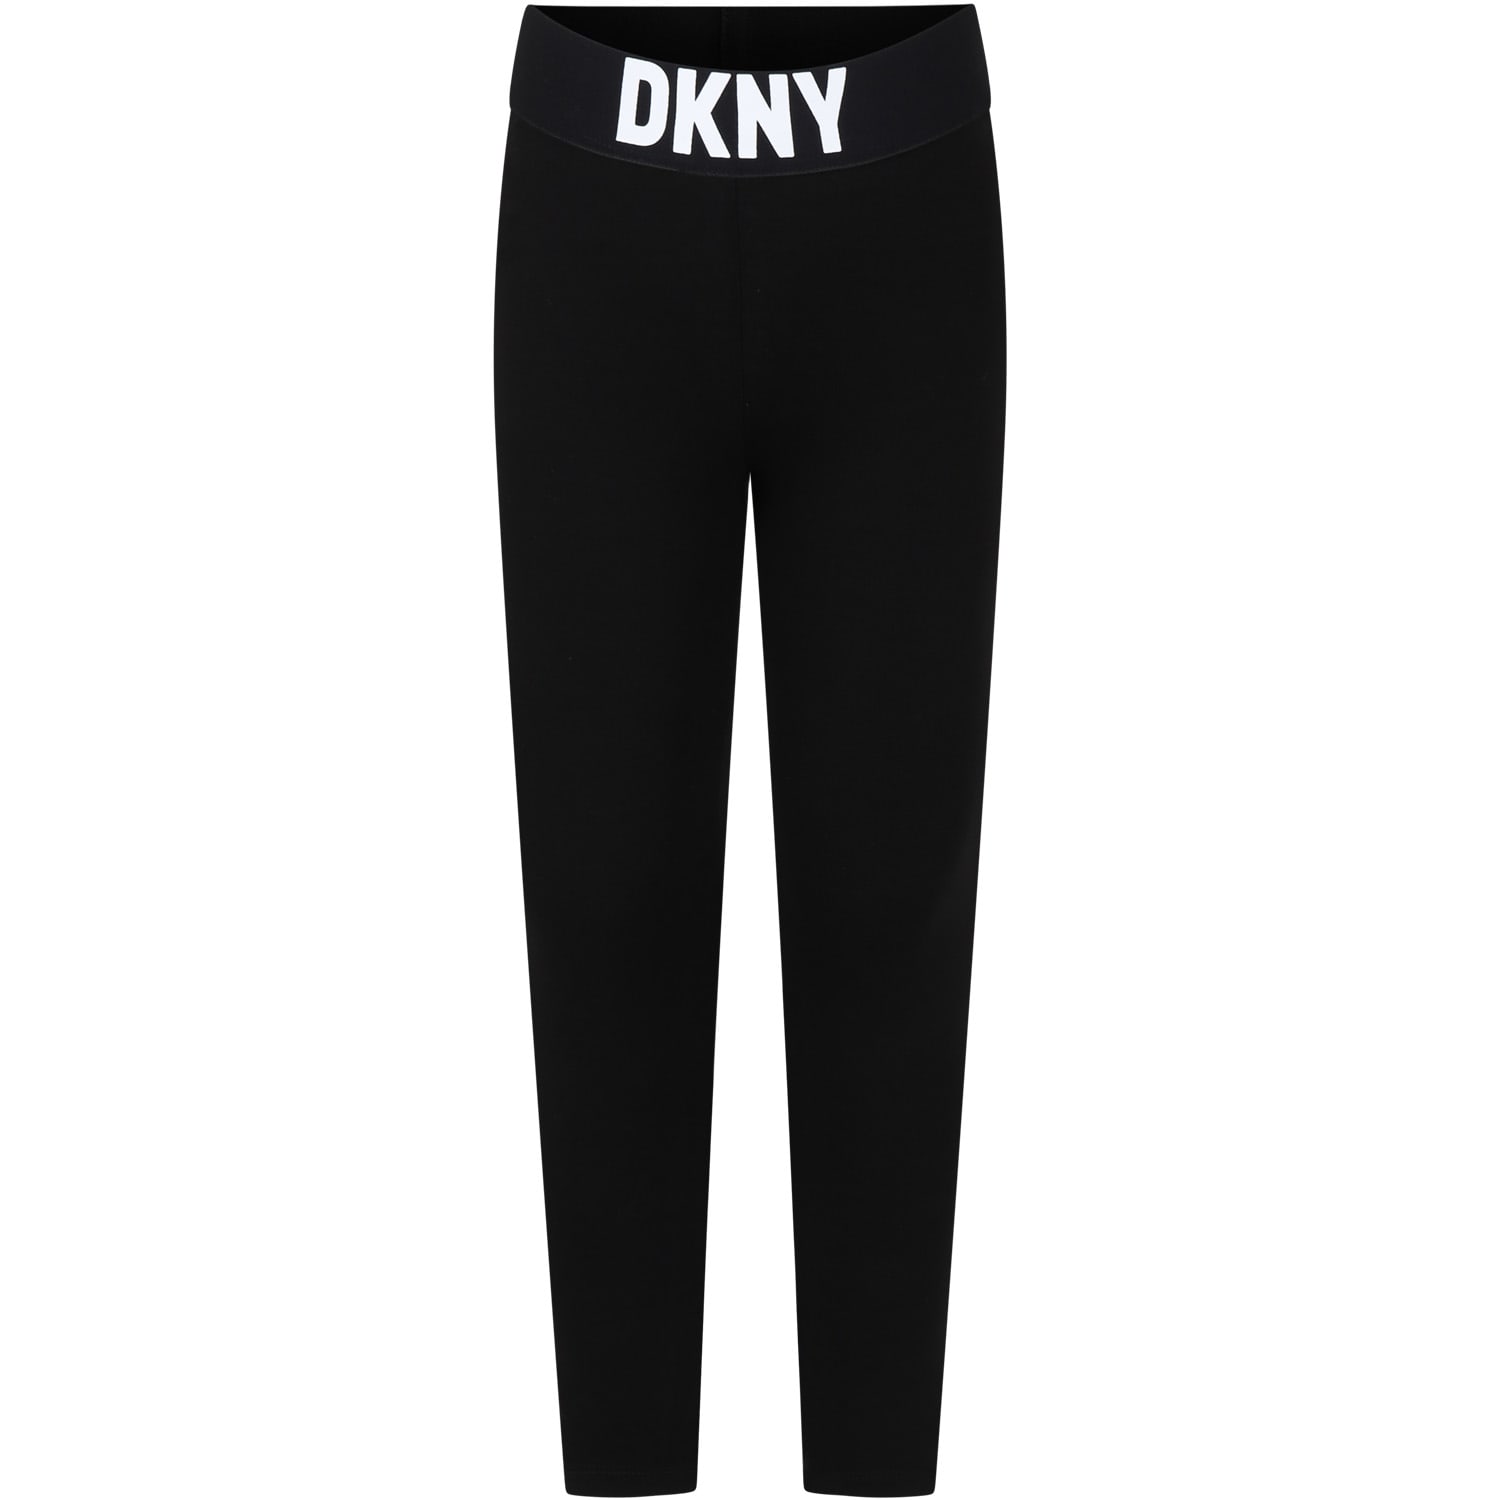 DKNY Black Leggings For Girl With Logo